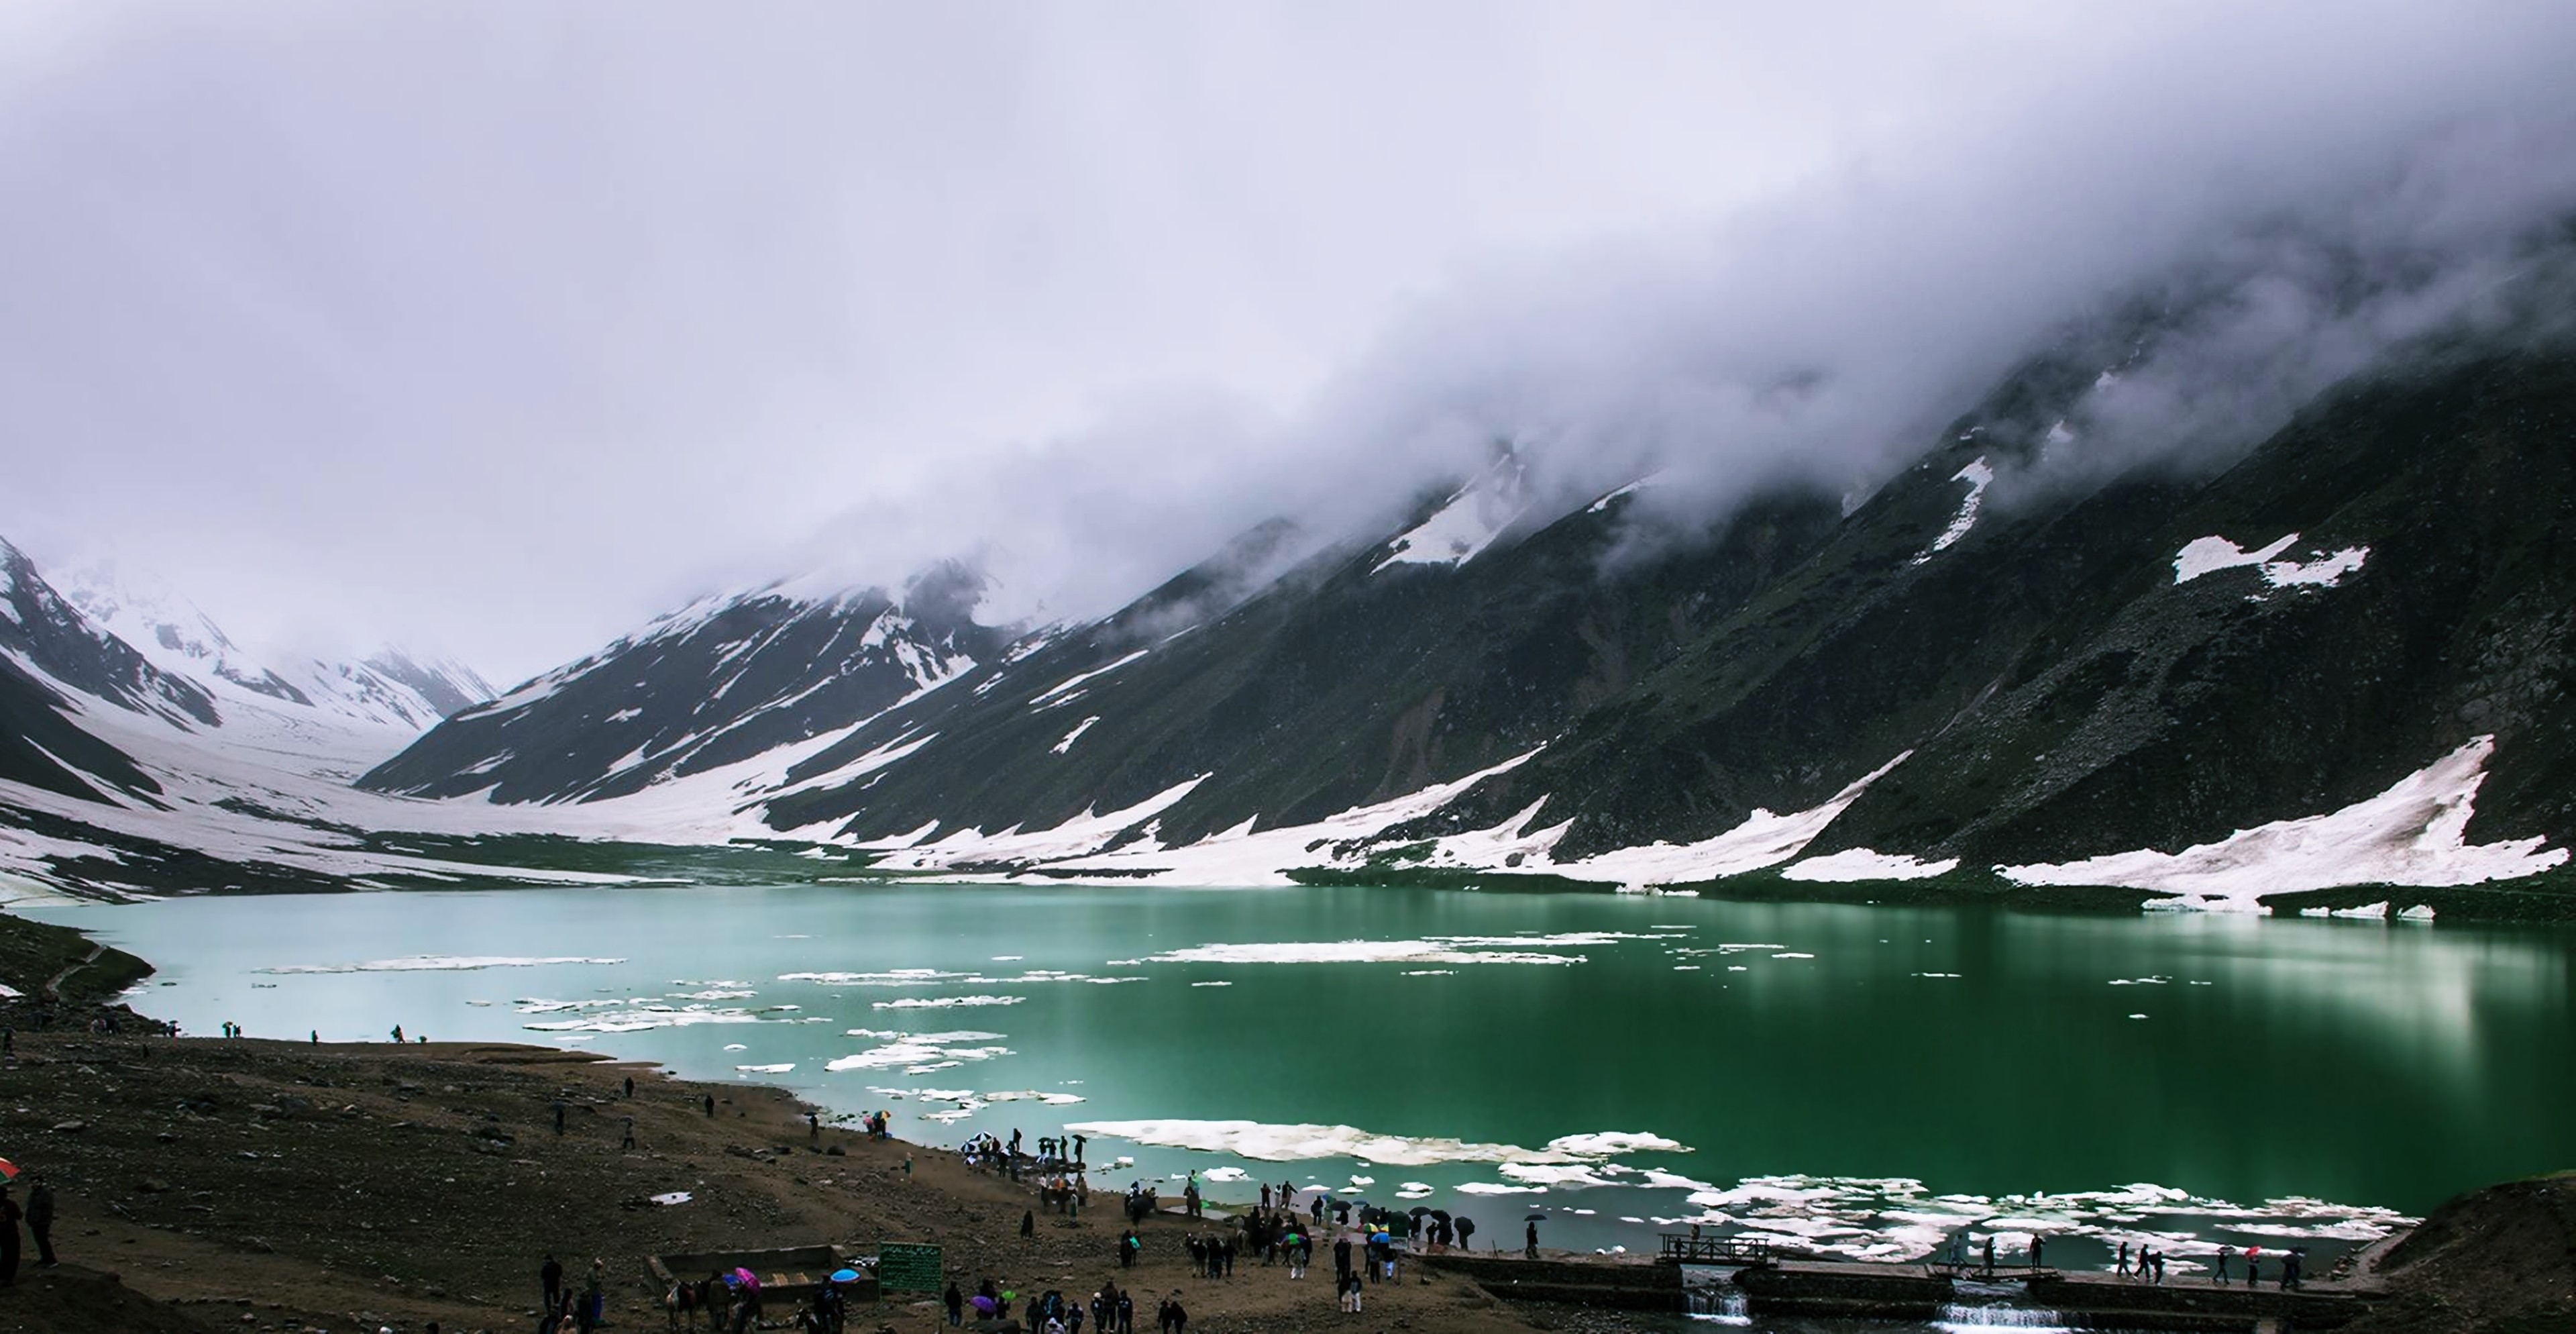 tapete in pakistan,berg,gletschersee,gebirge,himmel,klang